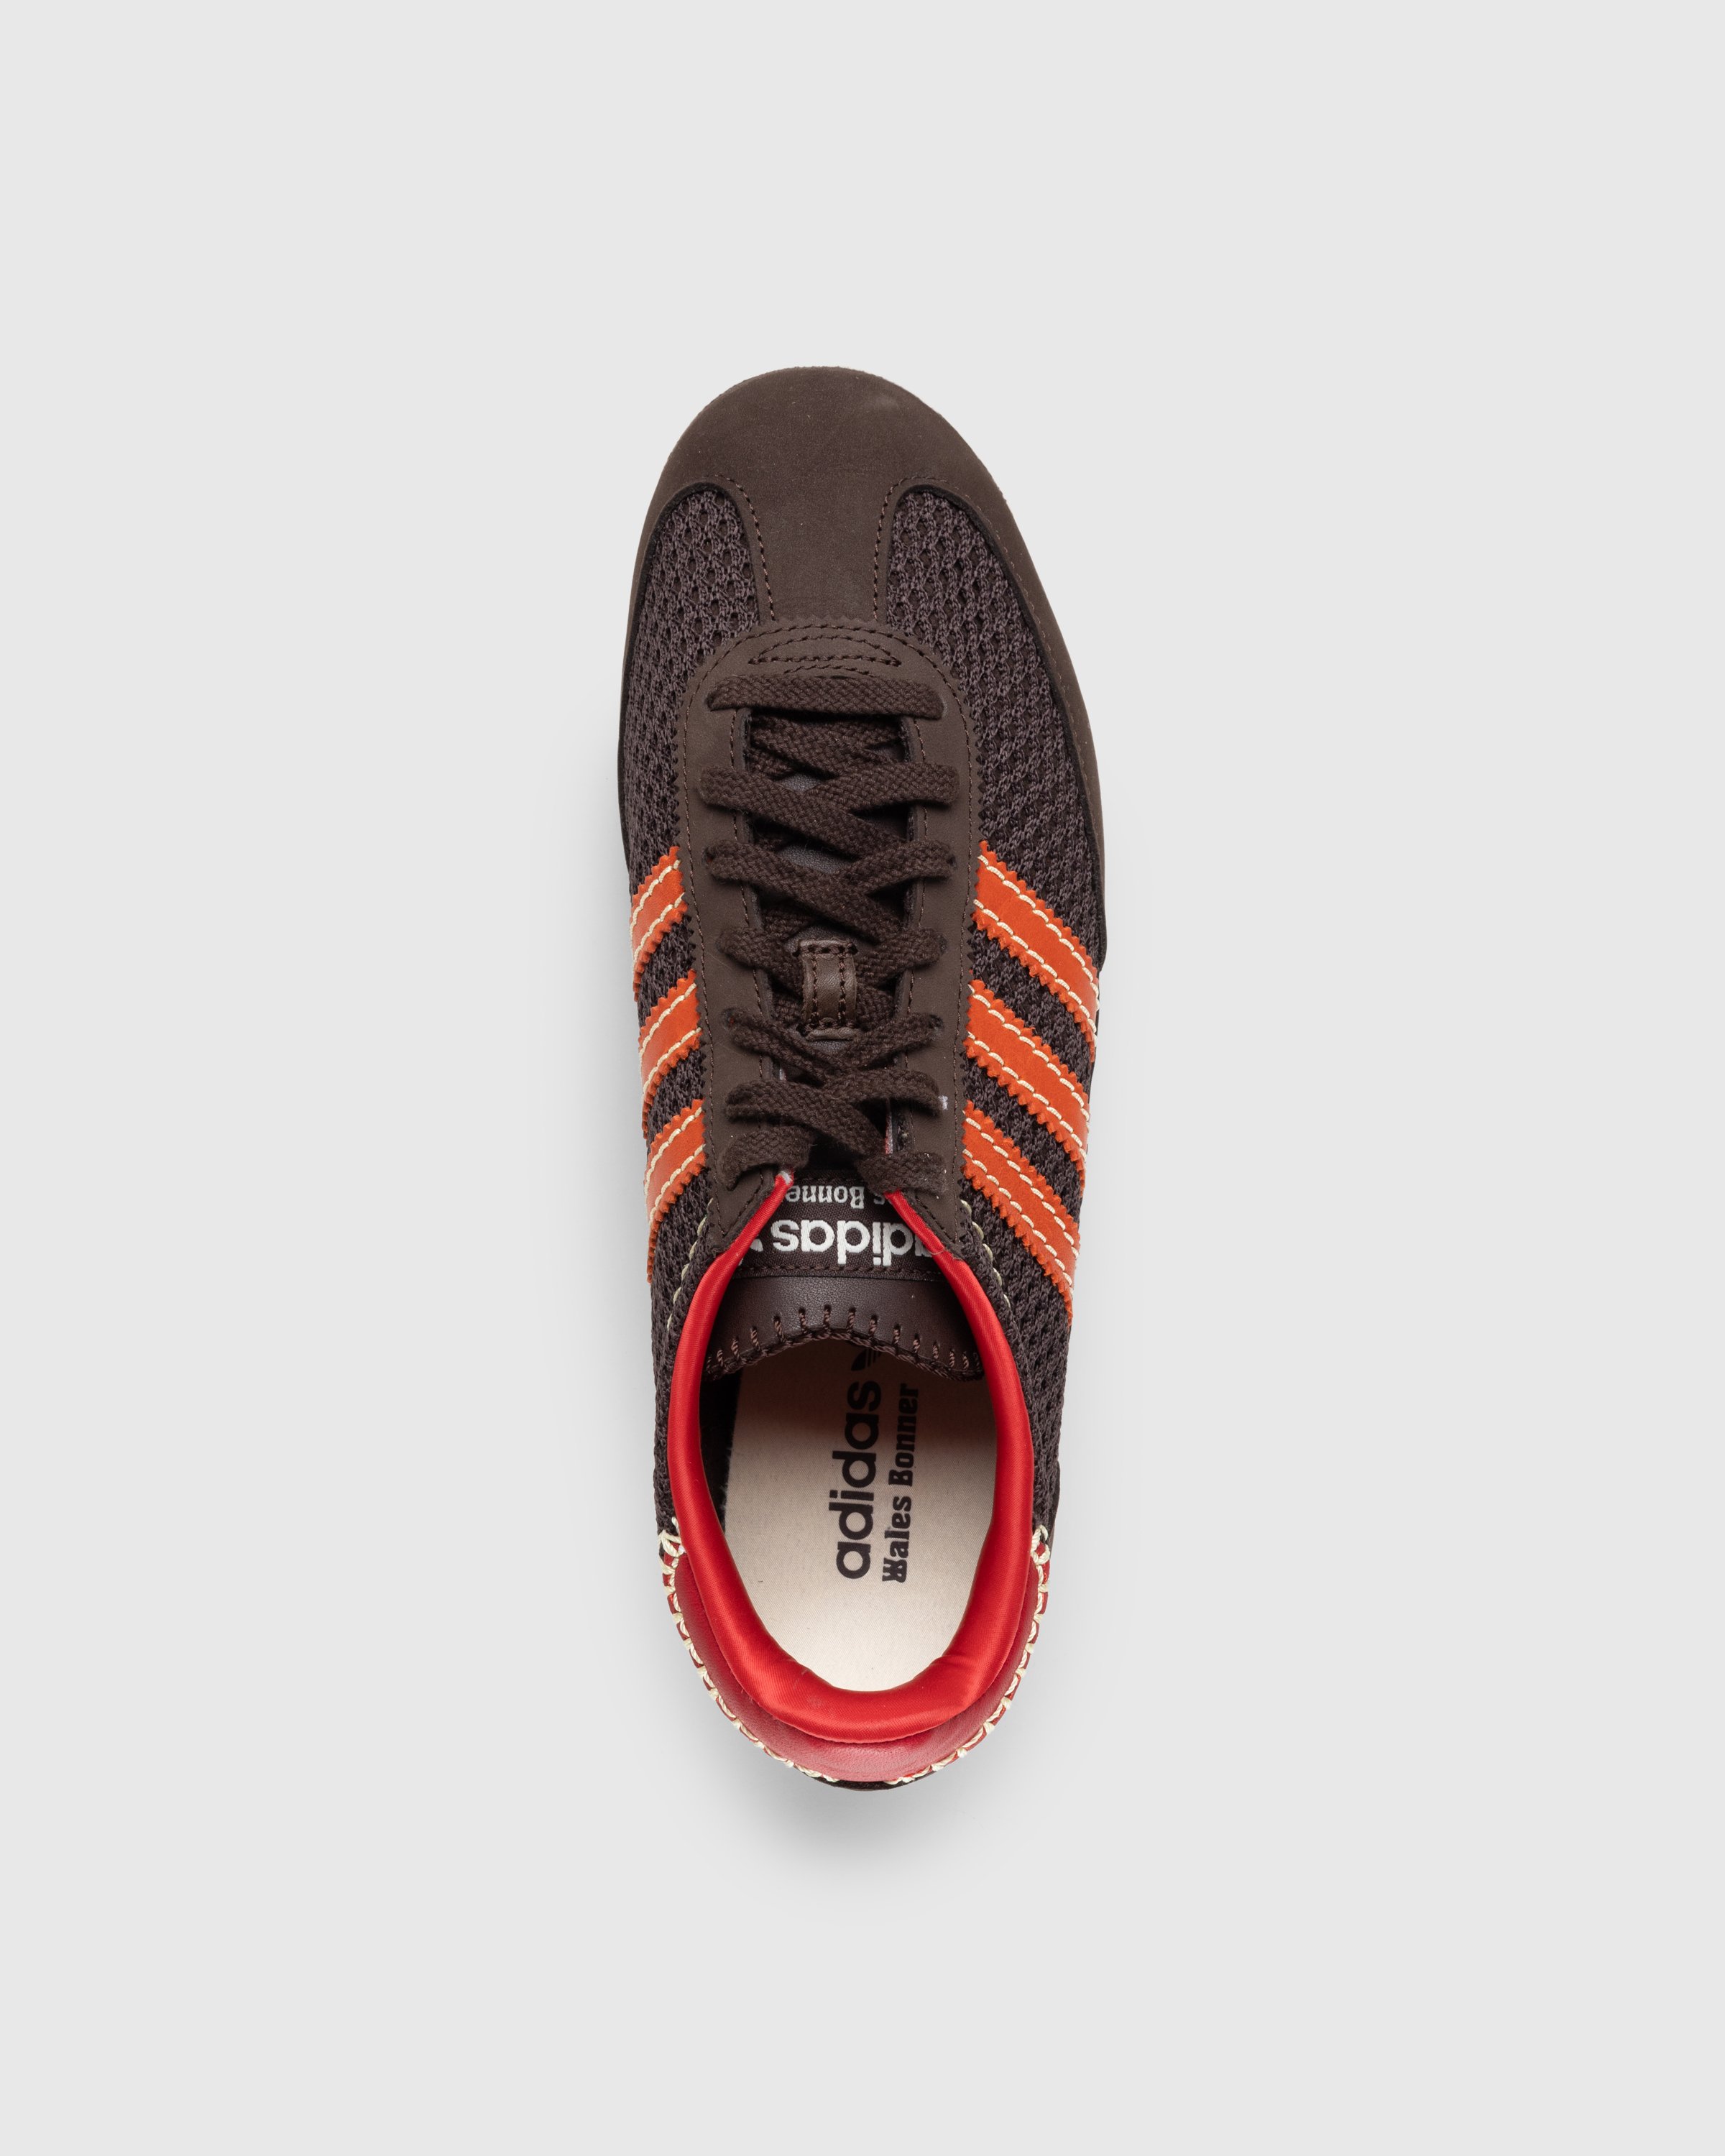 Adidas x Wales Bonner - SL72 Knit Dark Brown - Footwear - Brown - Image 5